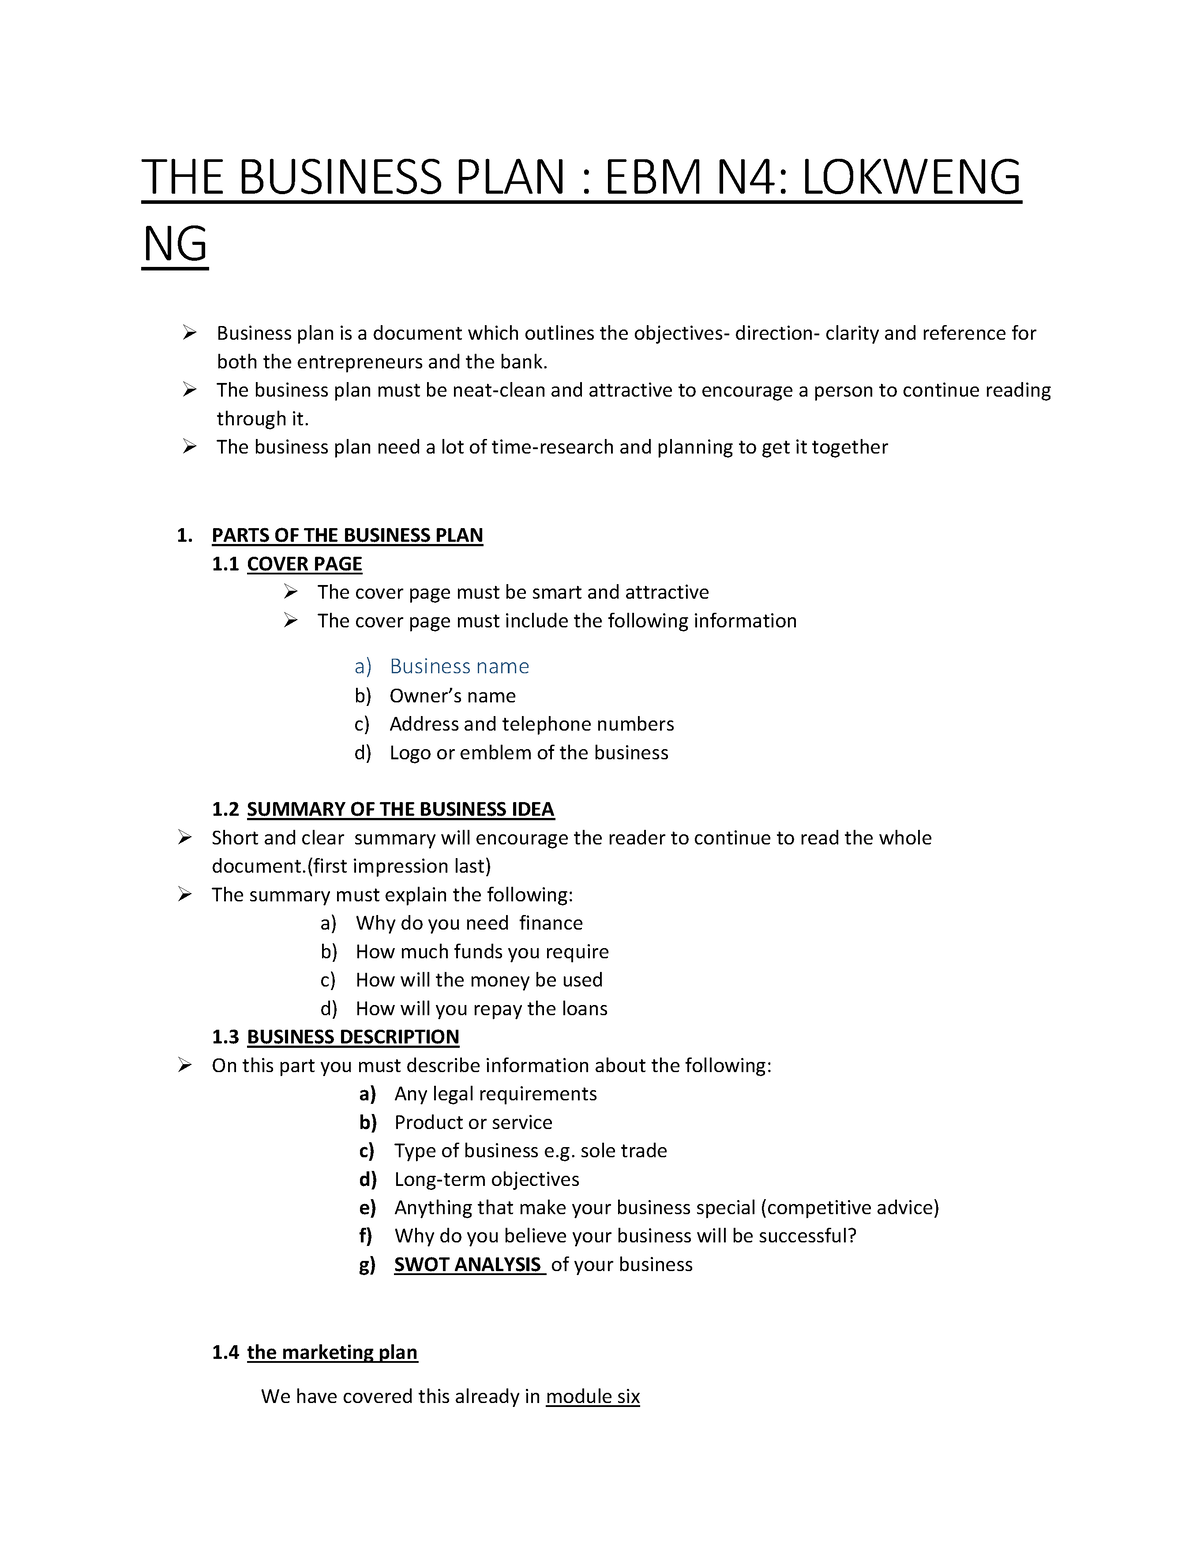 ebm business plan assignment